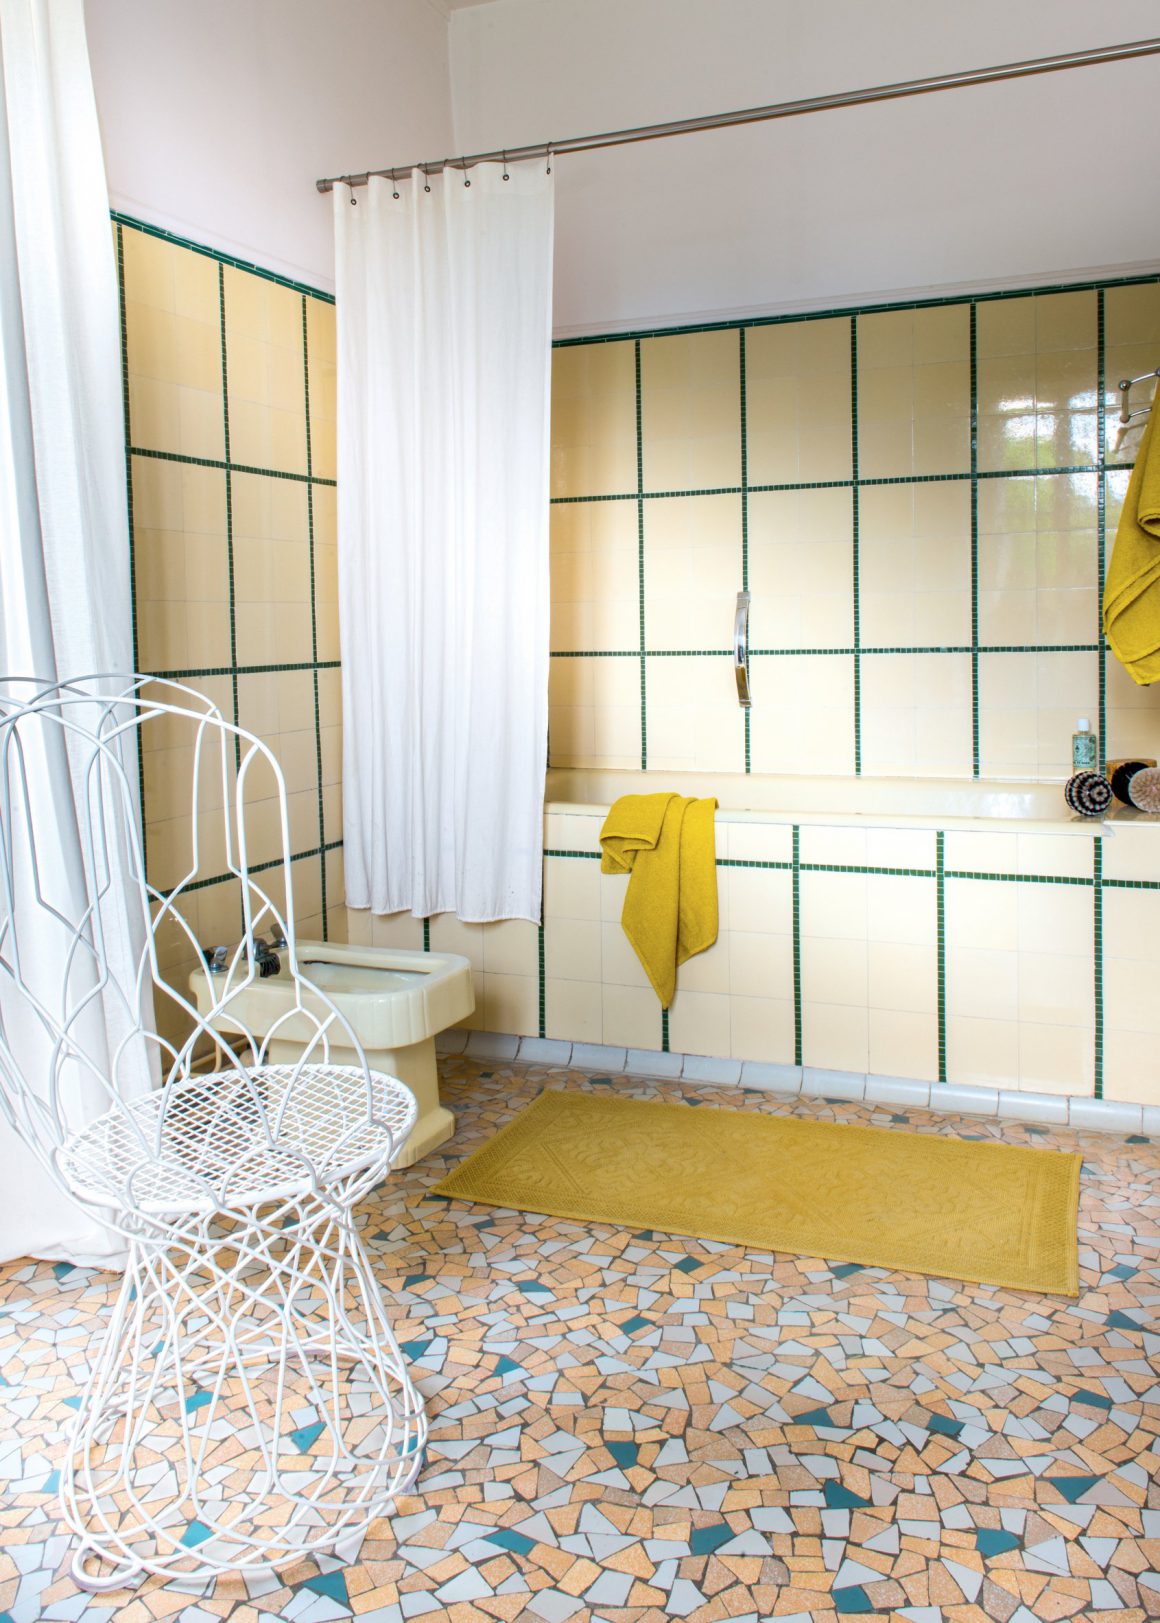 Salle de bain des années 40 dans des camaïeux de jaune et blanc. CP. Stephen Clément